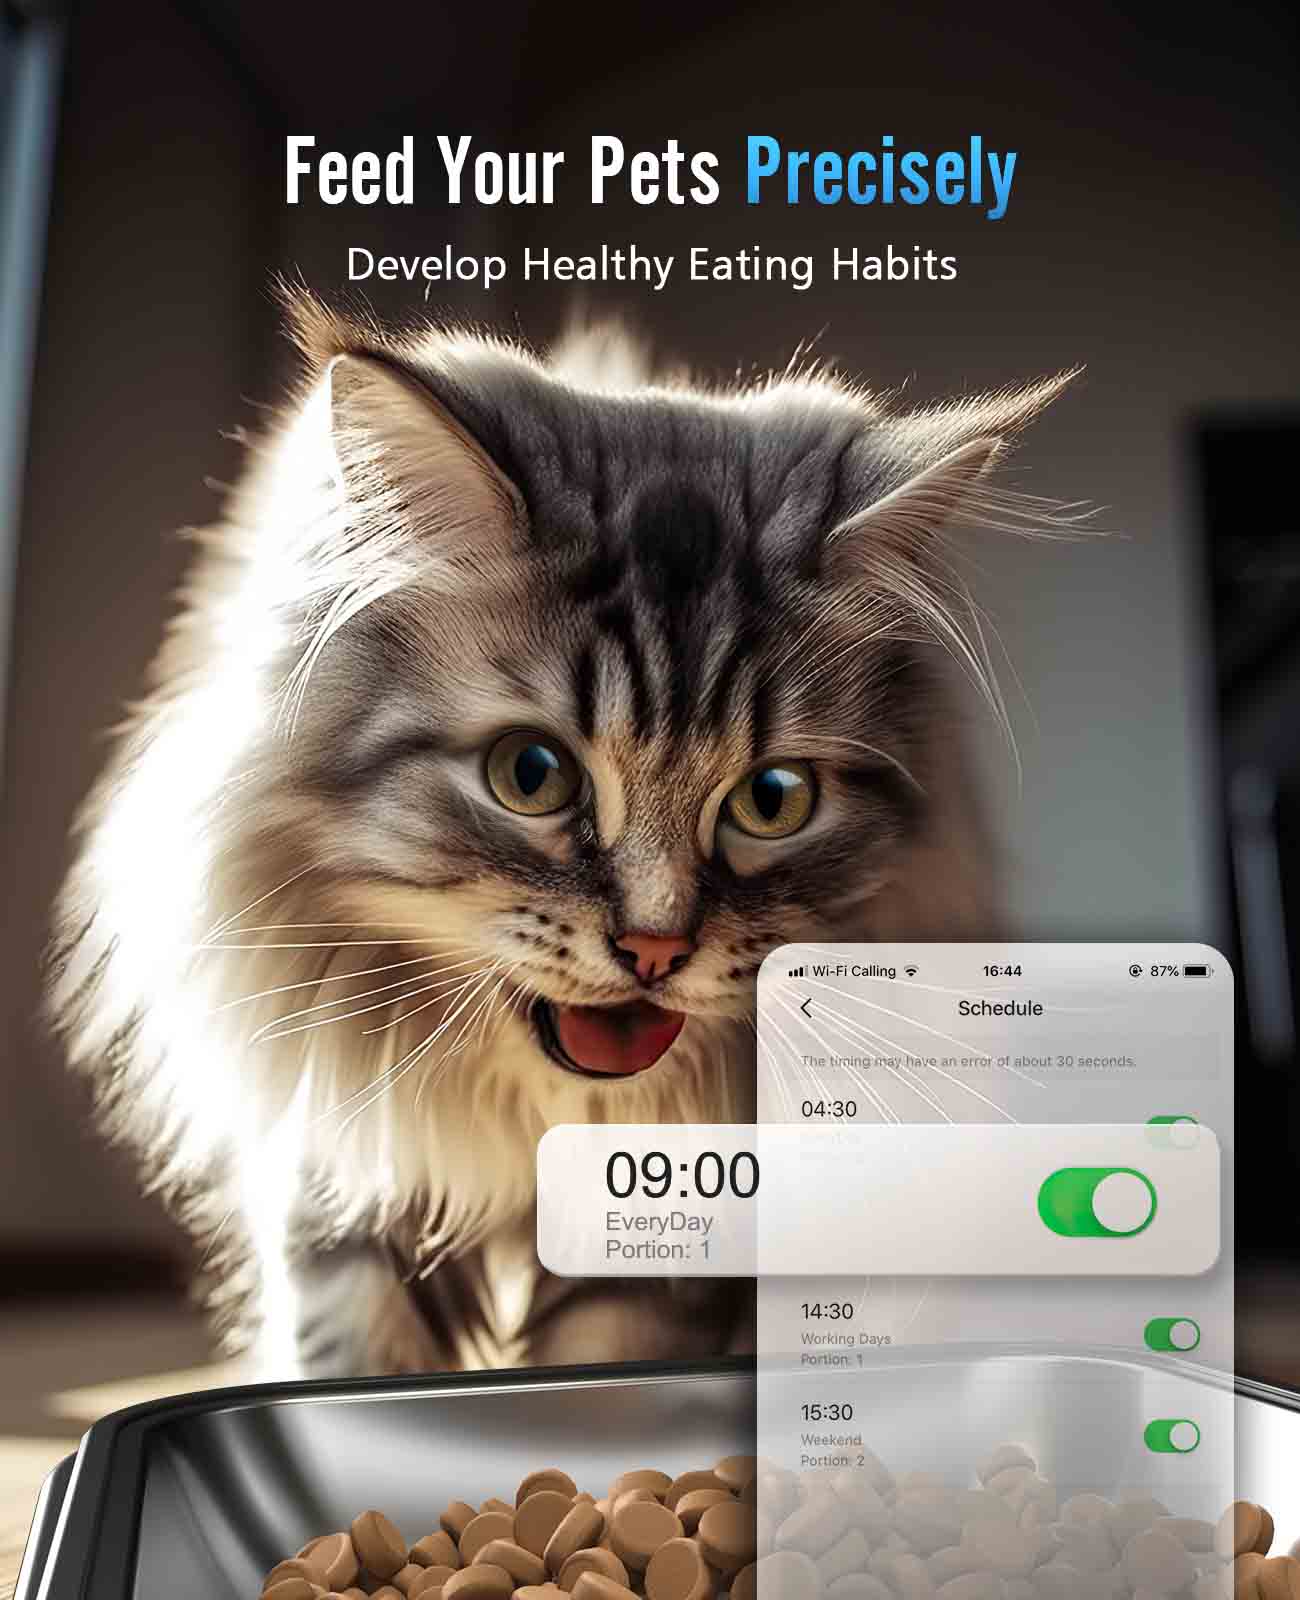 
                  
                    Distributore automatico di cibo per gatti Oneisall con Wi-Fi 5G, mangiatoie automatiche per gatti per 2 gatti, distributore di cibo secco temporizzato da 20 tazze con controllo APP
                  
                